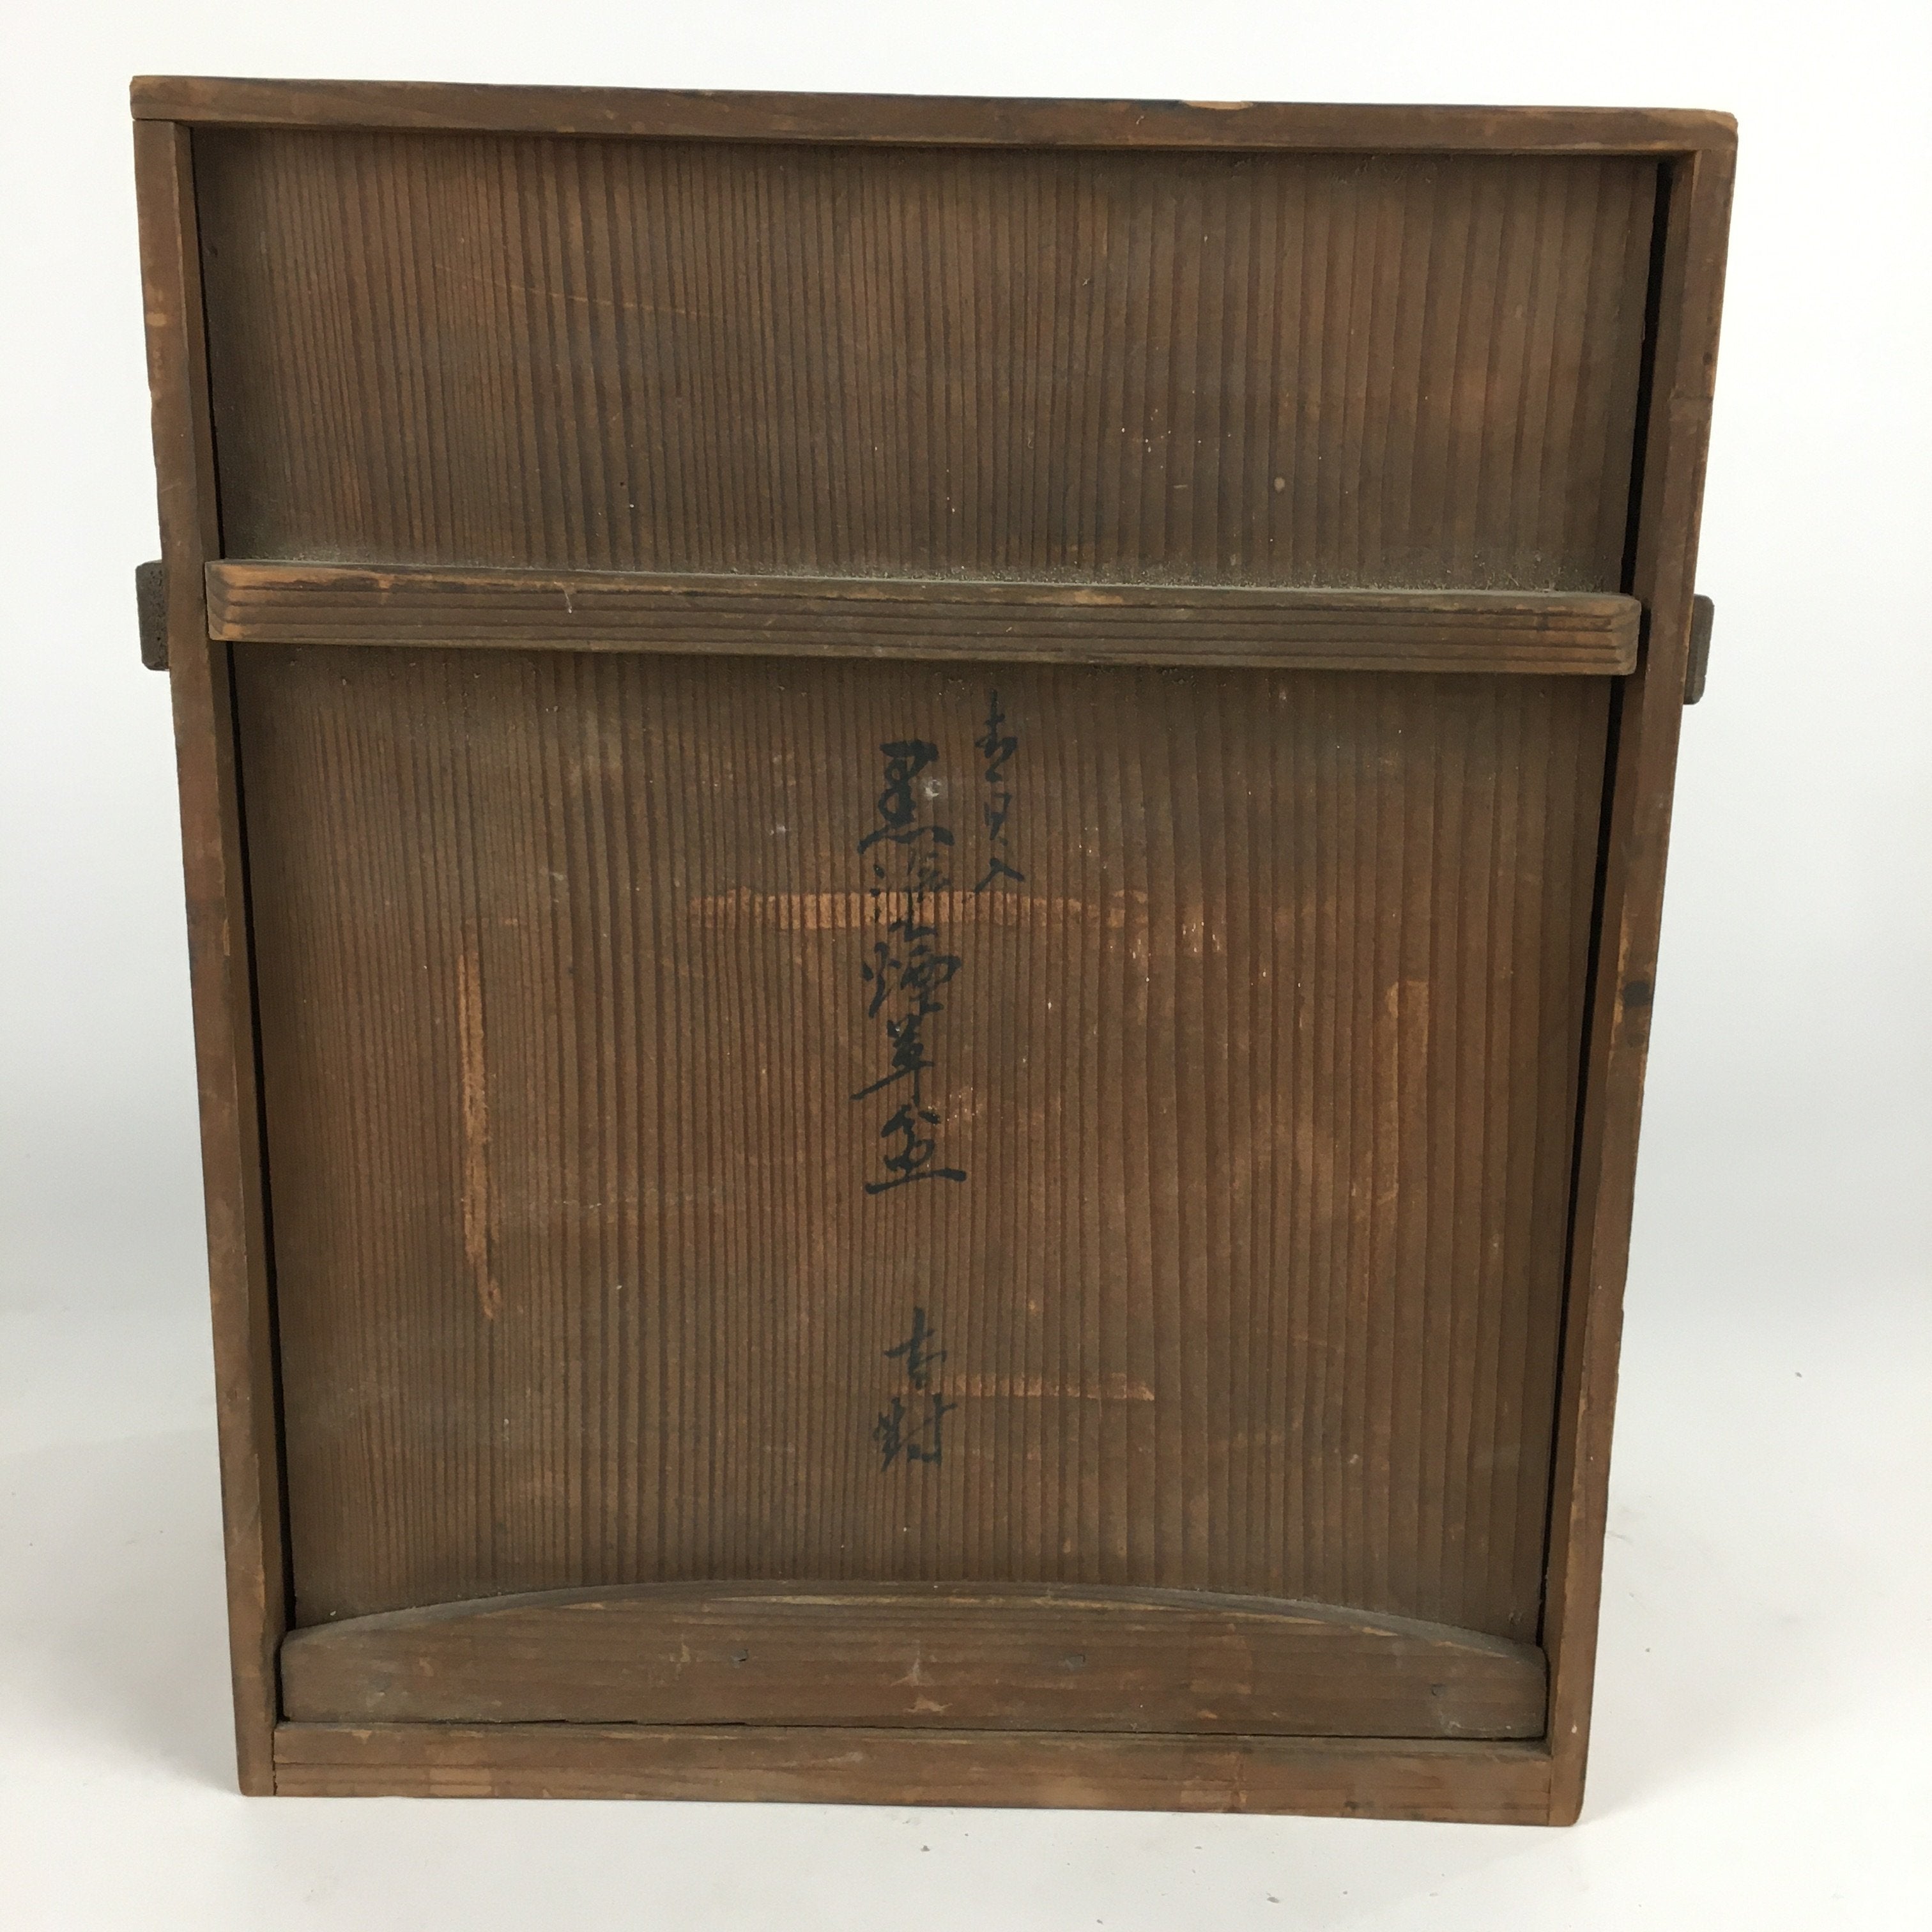 Japanese Wooden Storage Box Hako Vtg Pottery Inside 27x17.5x32.4cm WB874